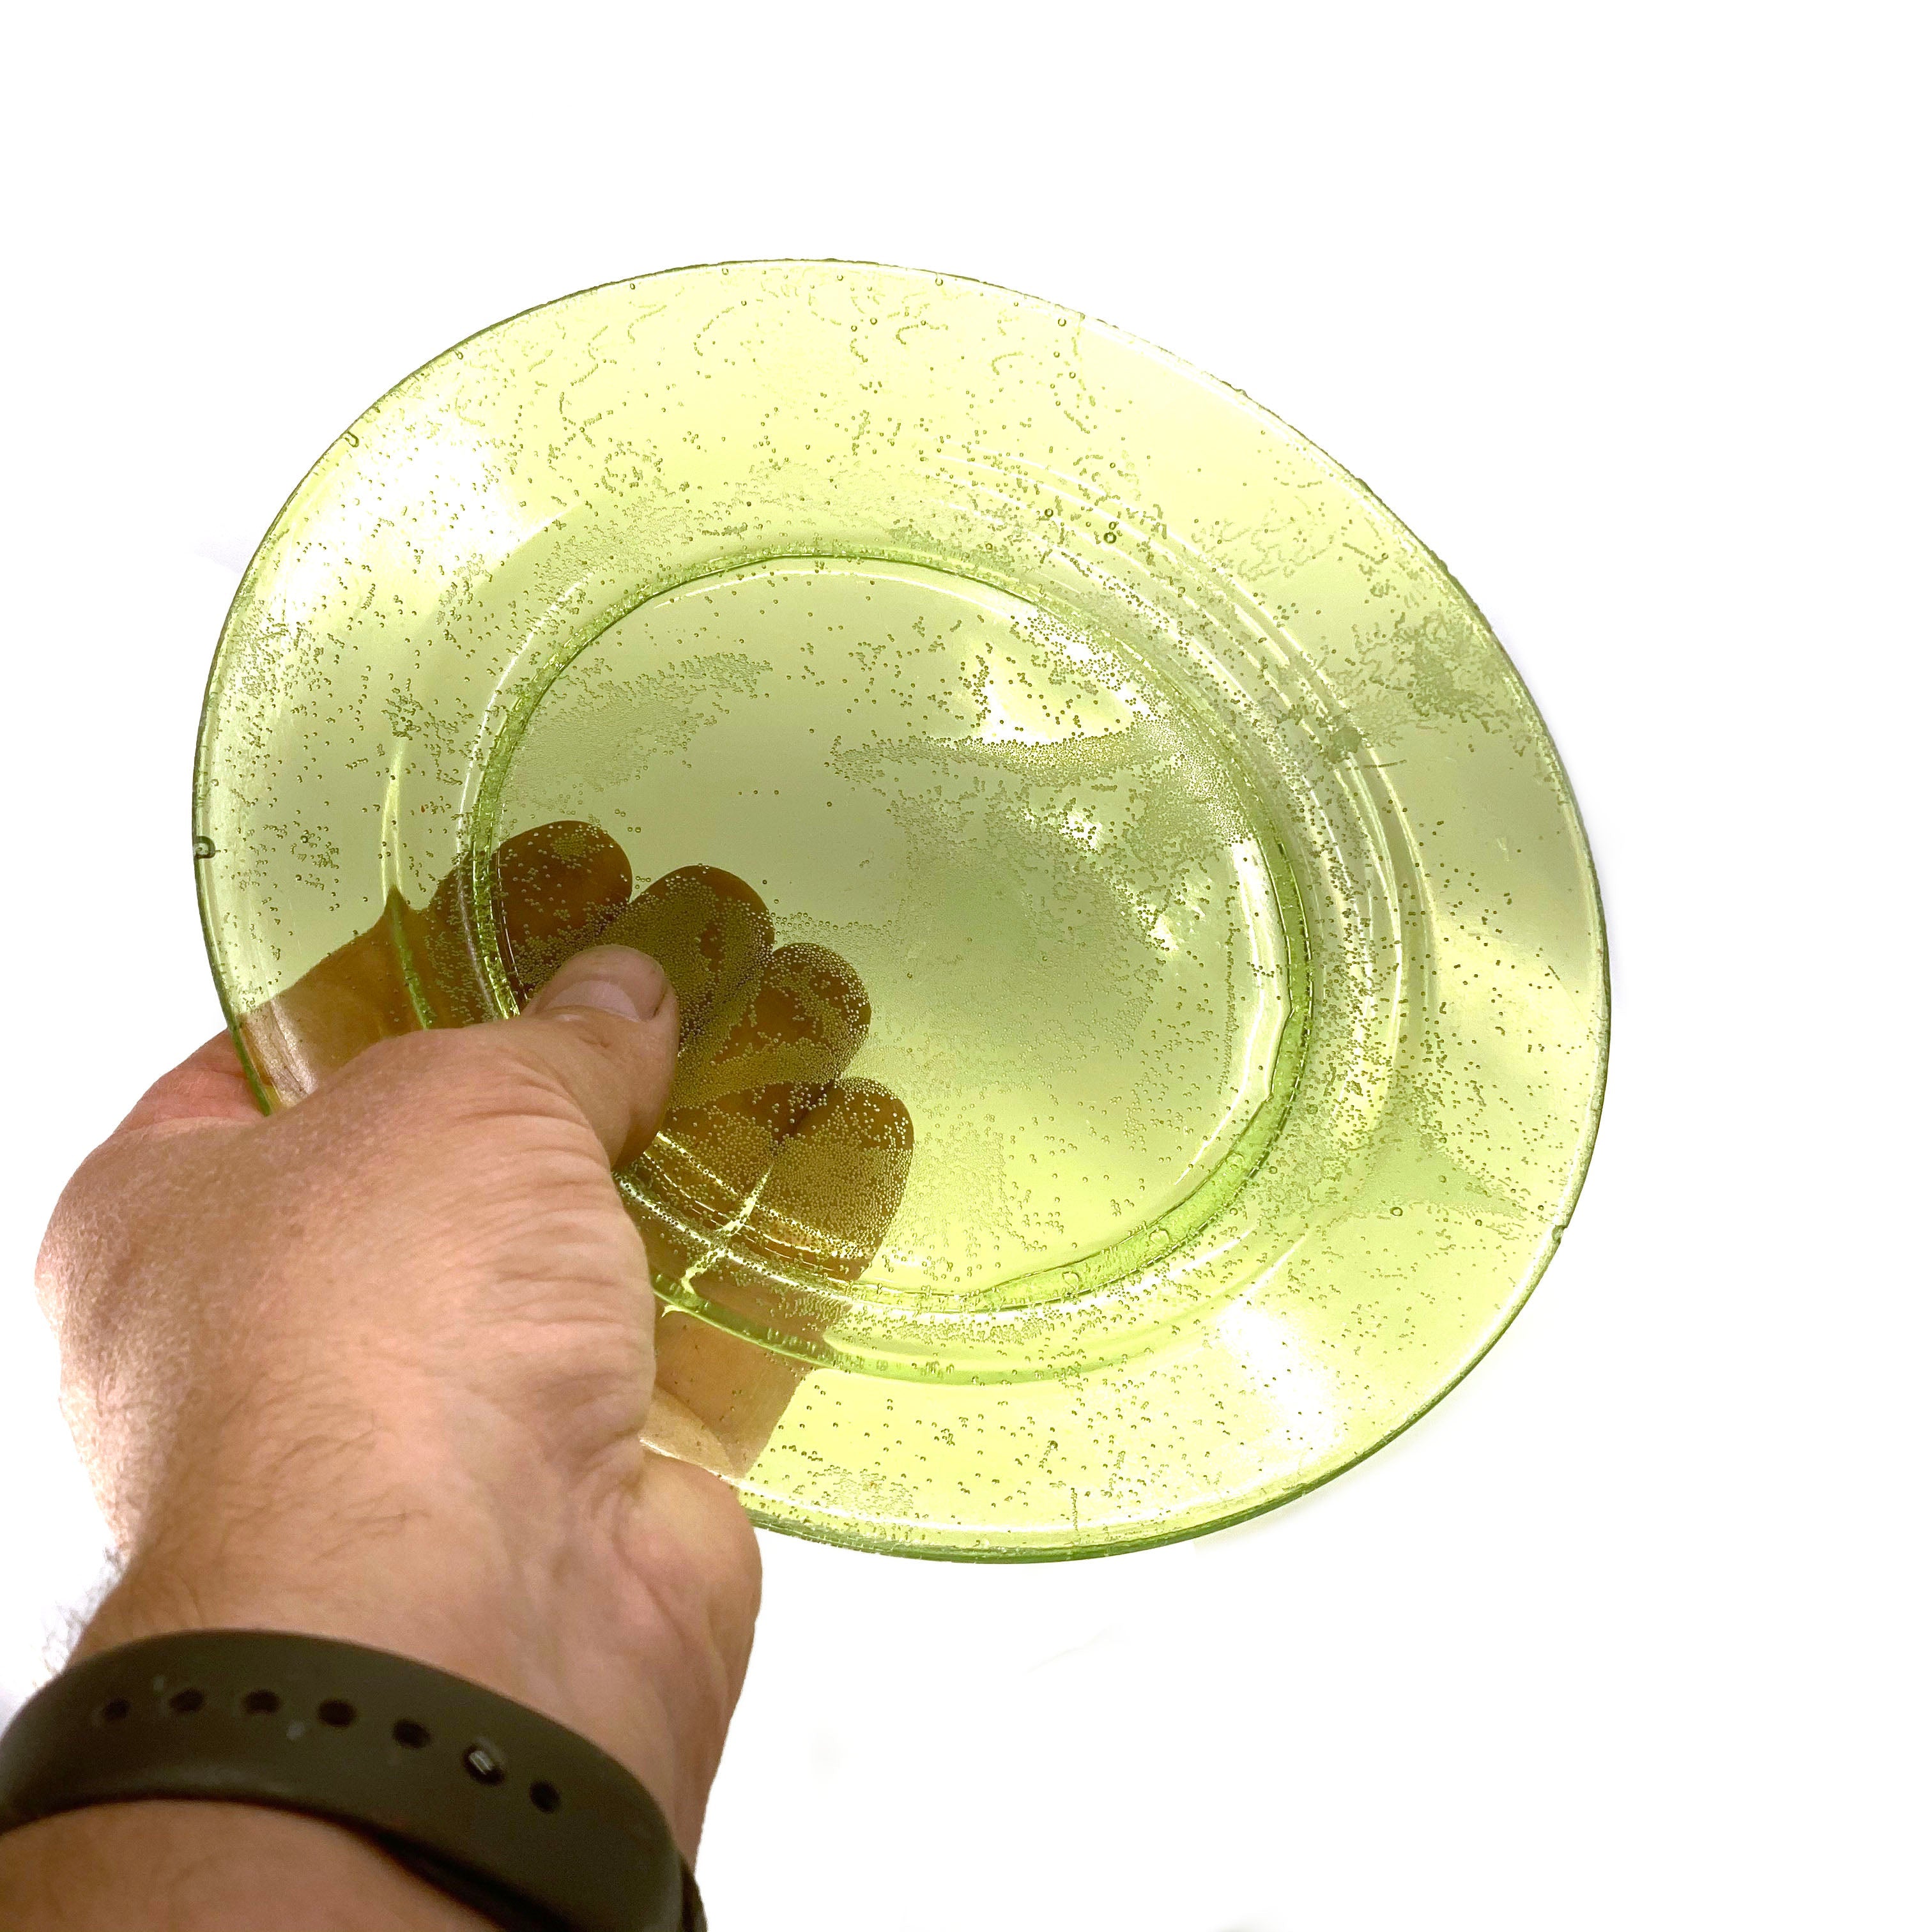 SMASHProps Breakaway Medium Dinner Plate - LIGHT GREEN translucent - Light Green,Translucent